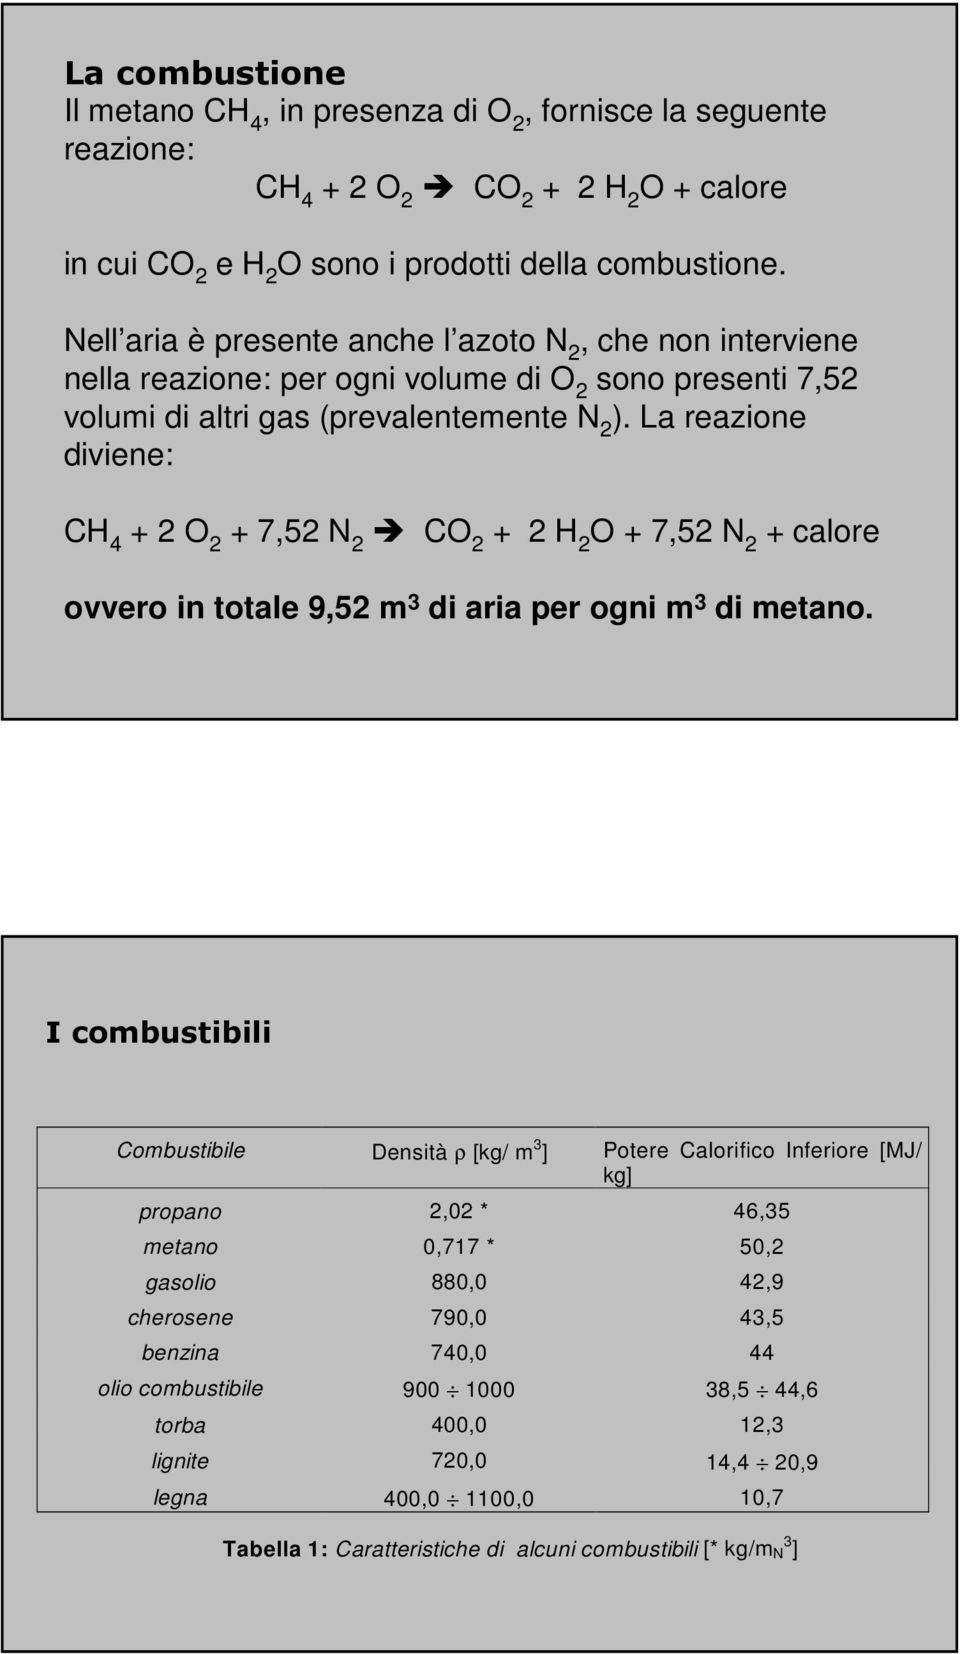 La reazione diviene: CH 4 + 2 O 2 + 7,52 N 2 CO 2 + 2 H 2 O + 7,52 N 2 + calore ovvero in totale 9,52 m 3 di aria per ogni m 3 di metano.